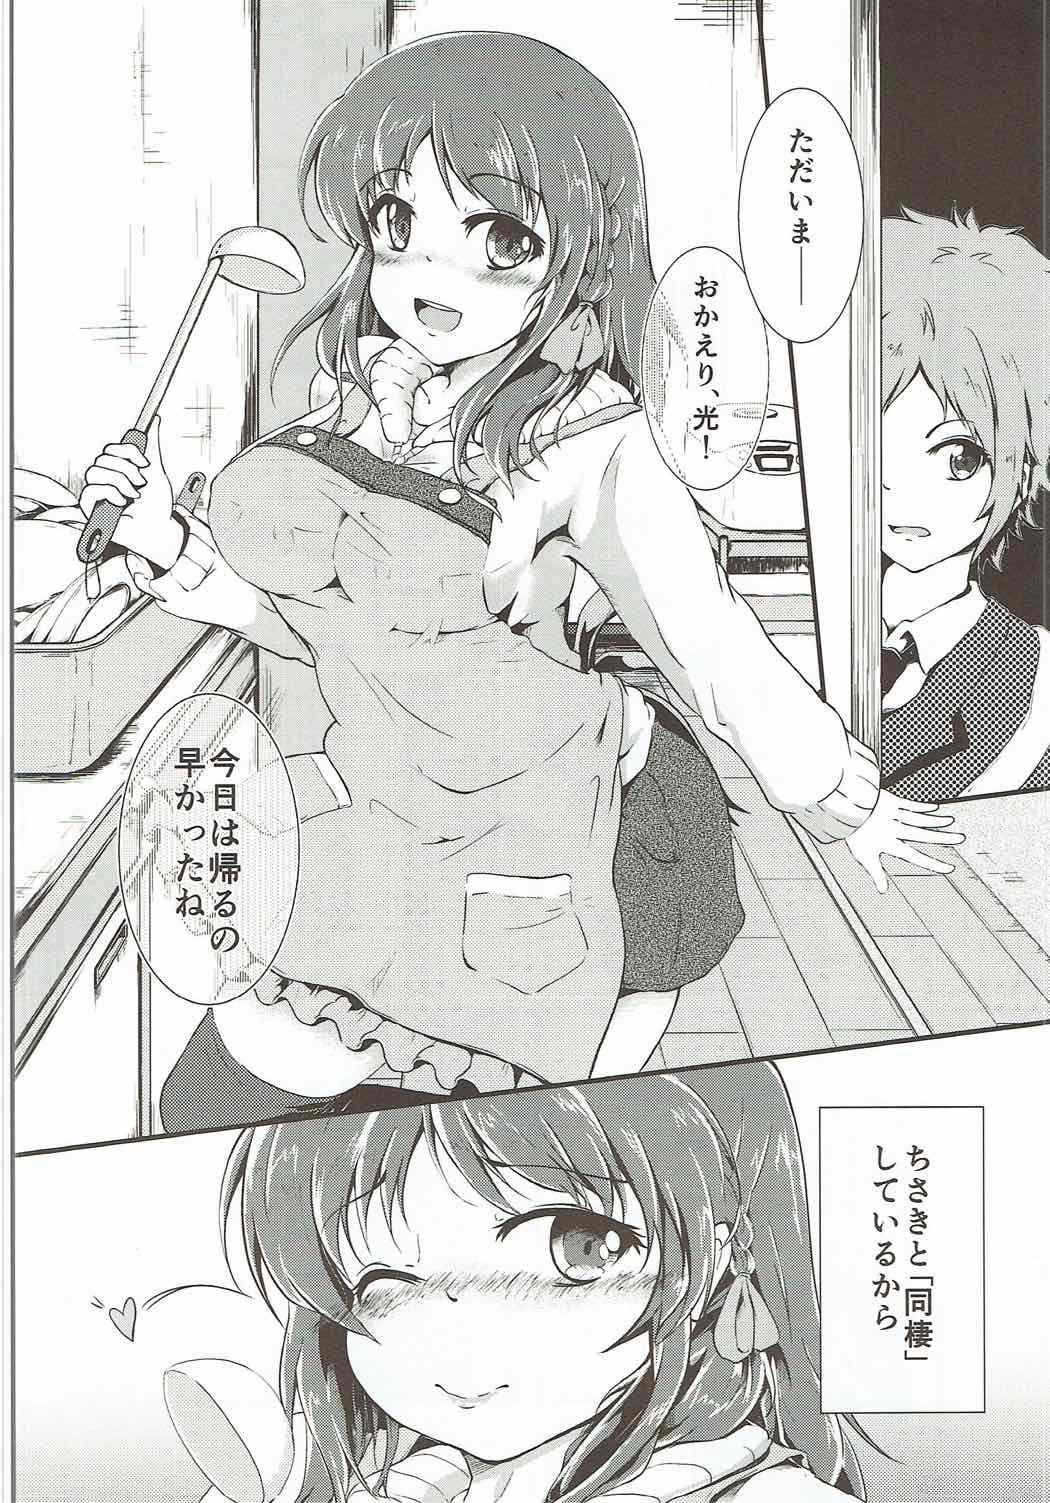 Prima Chisaki to Issho - Nagi no asukara Cojiendo - Page 3